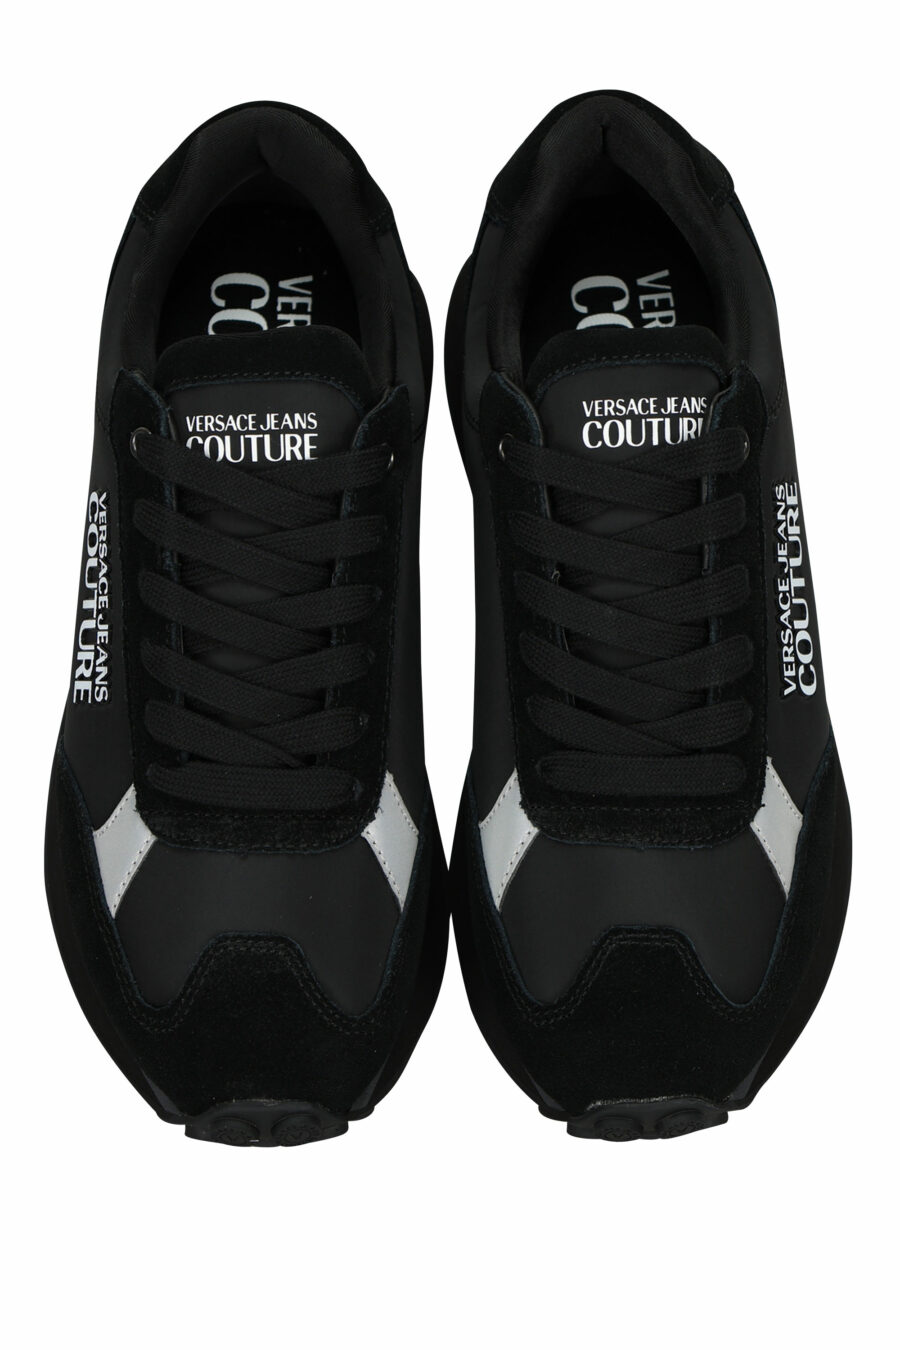 Zapatillas negras mix con minilogo blanco y suela negra - 8052019606362 4